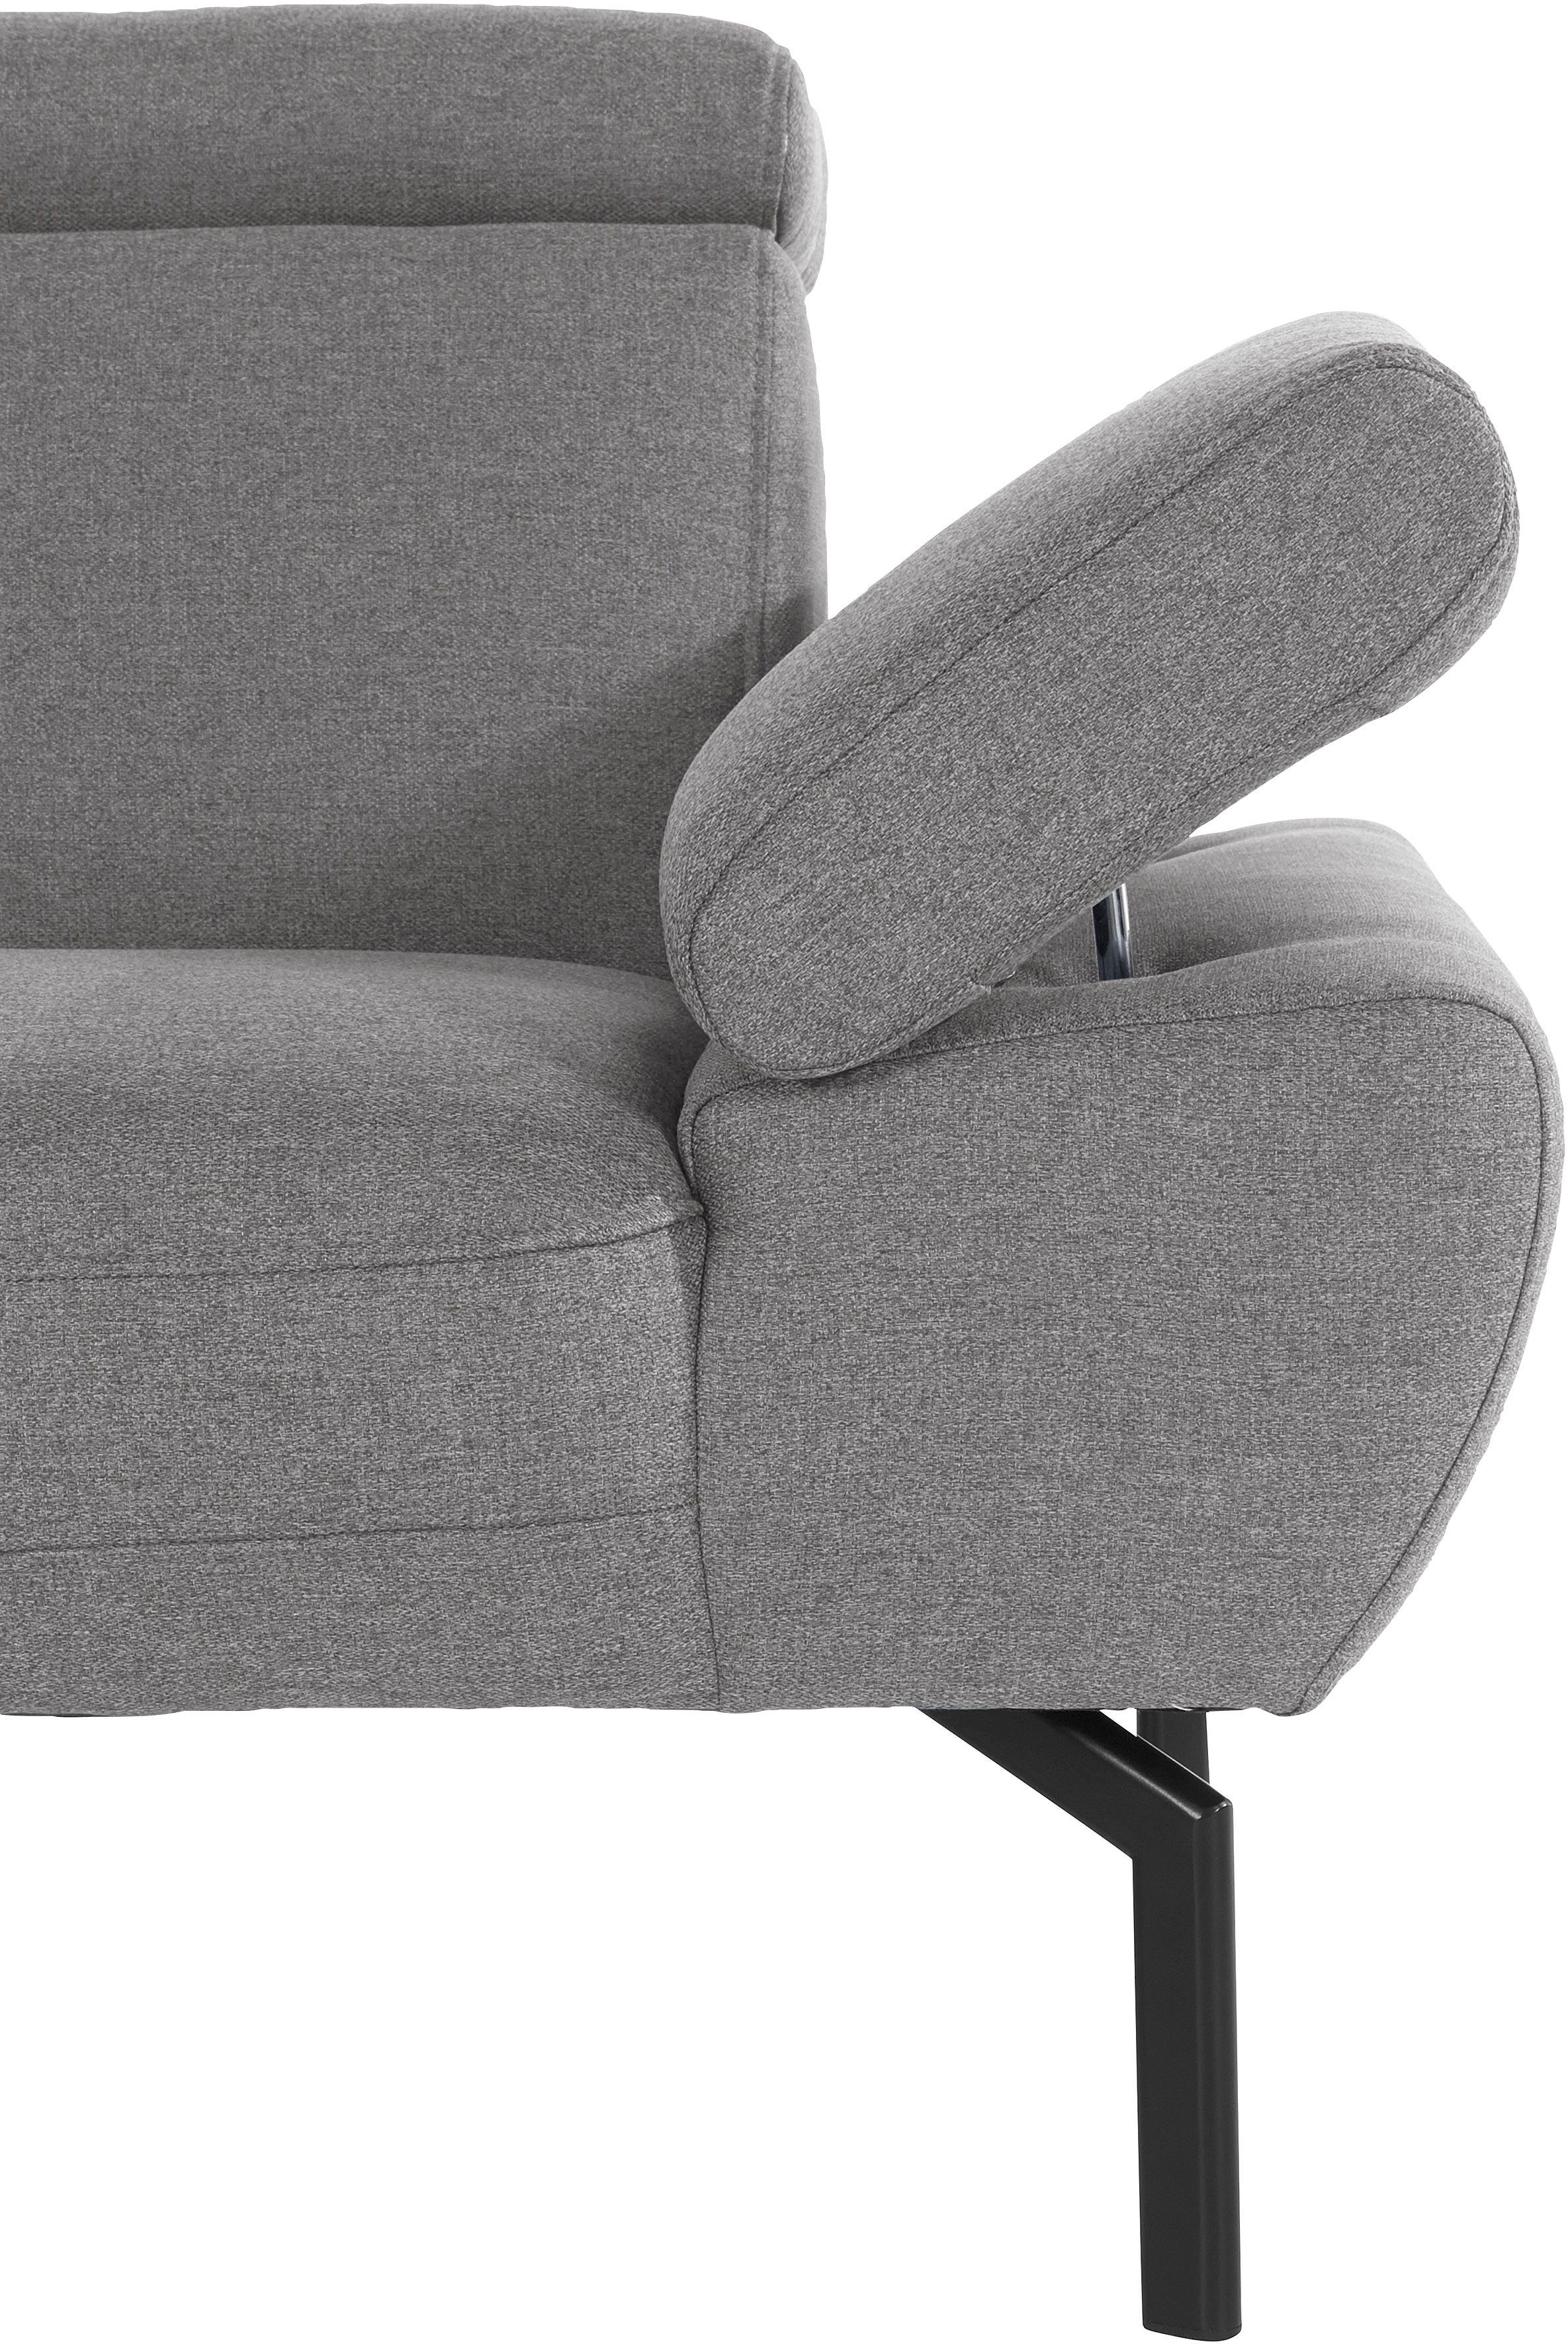 Luxus, Rückenverstellung, Trapino Luxus-Microfaser mit wahlweise of 2-Sitzer in Lederoptik Style Places